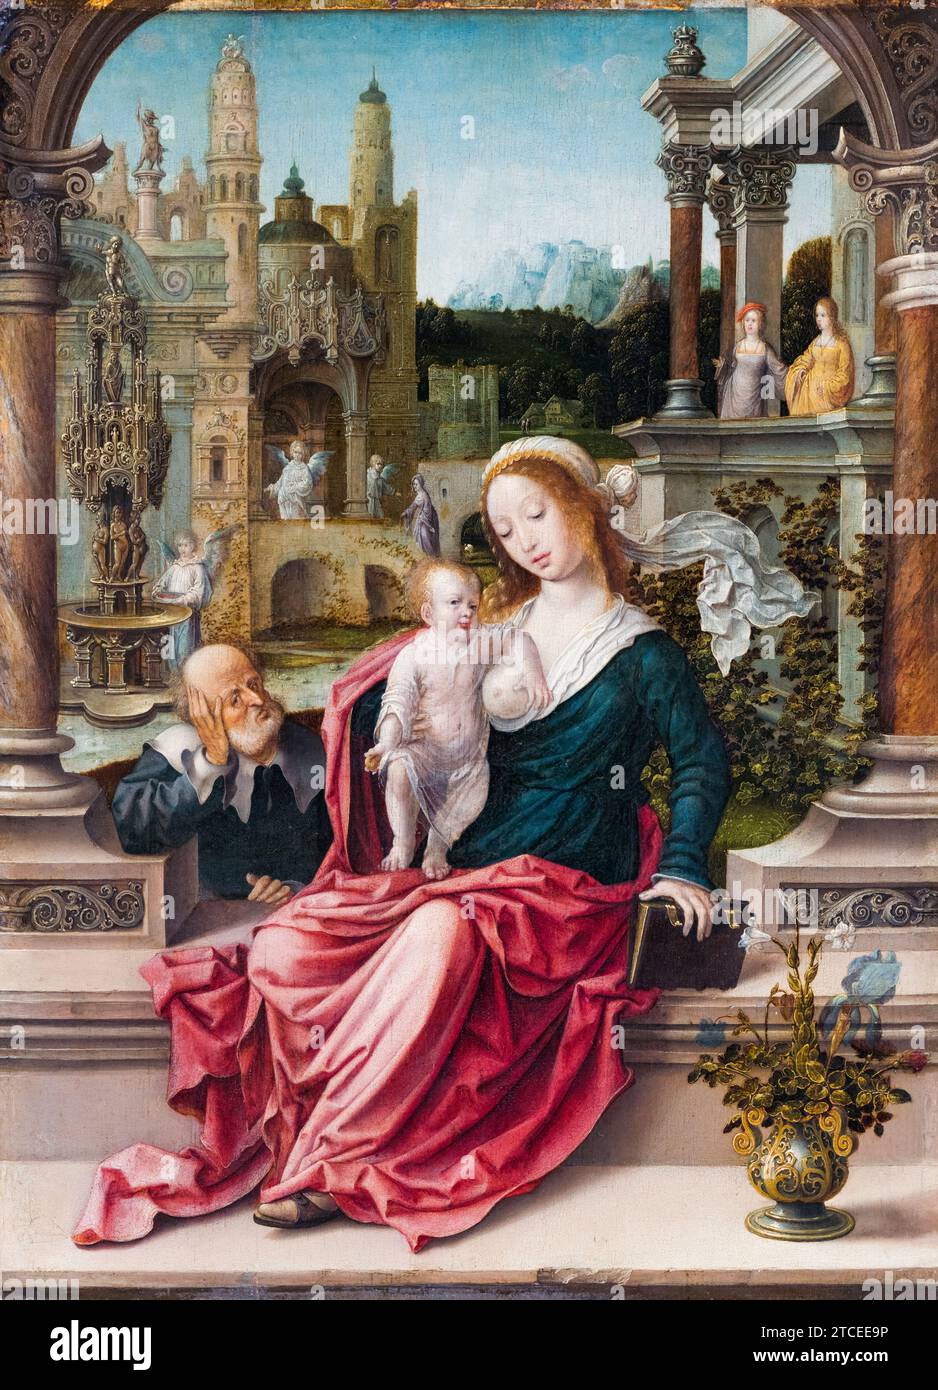 Jan Gossaert peinture, la Sainte famille, huile sur panneau, 1507-1508 Banque D'Images